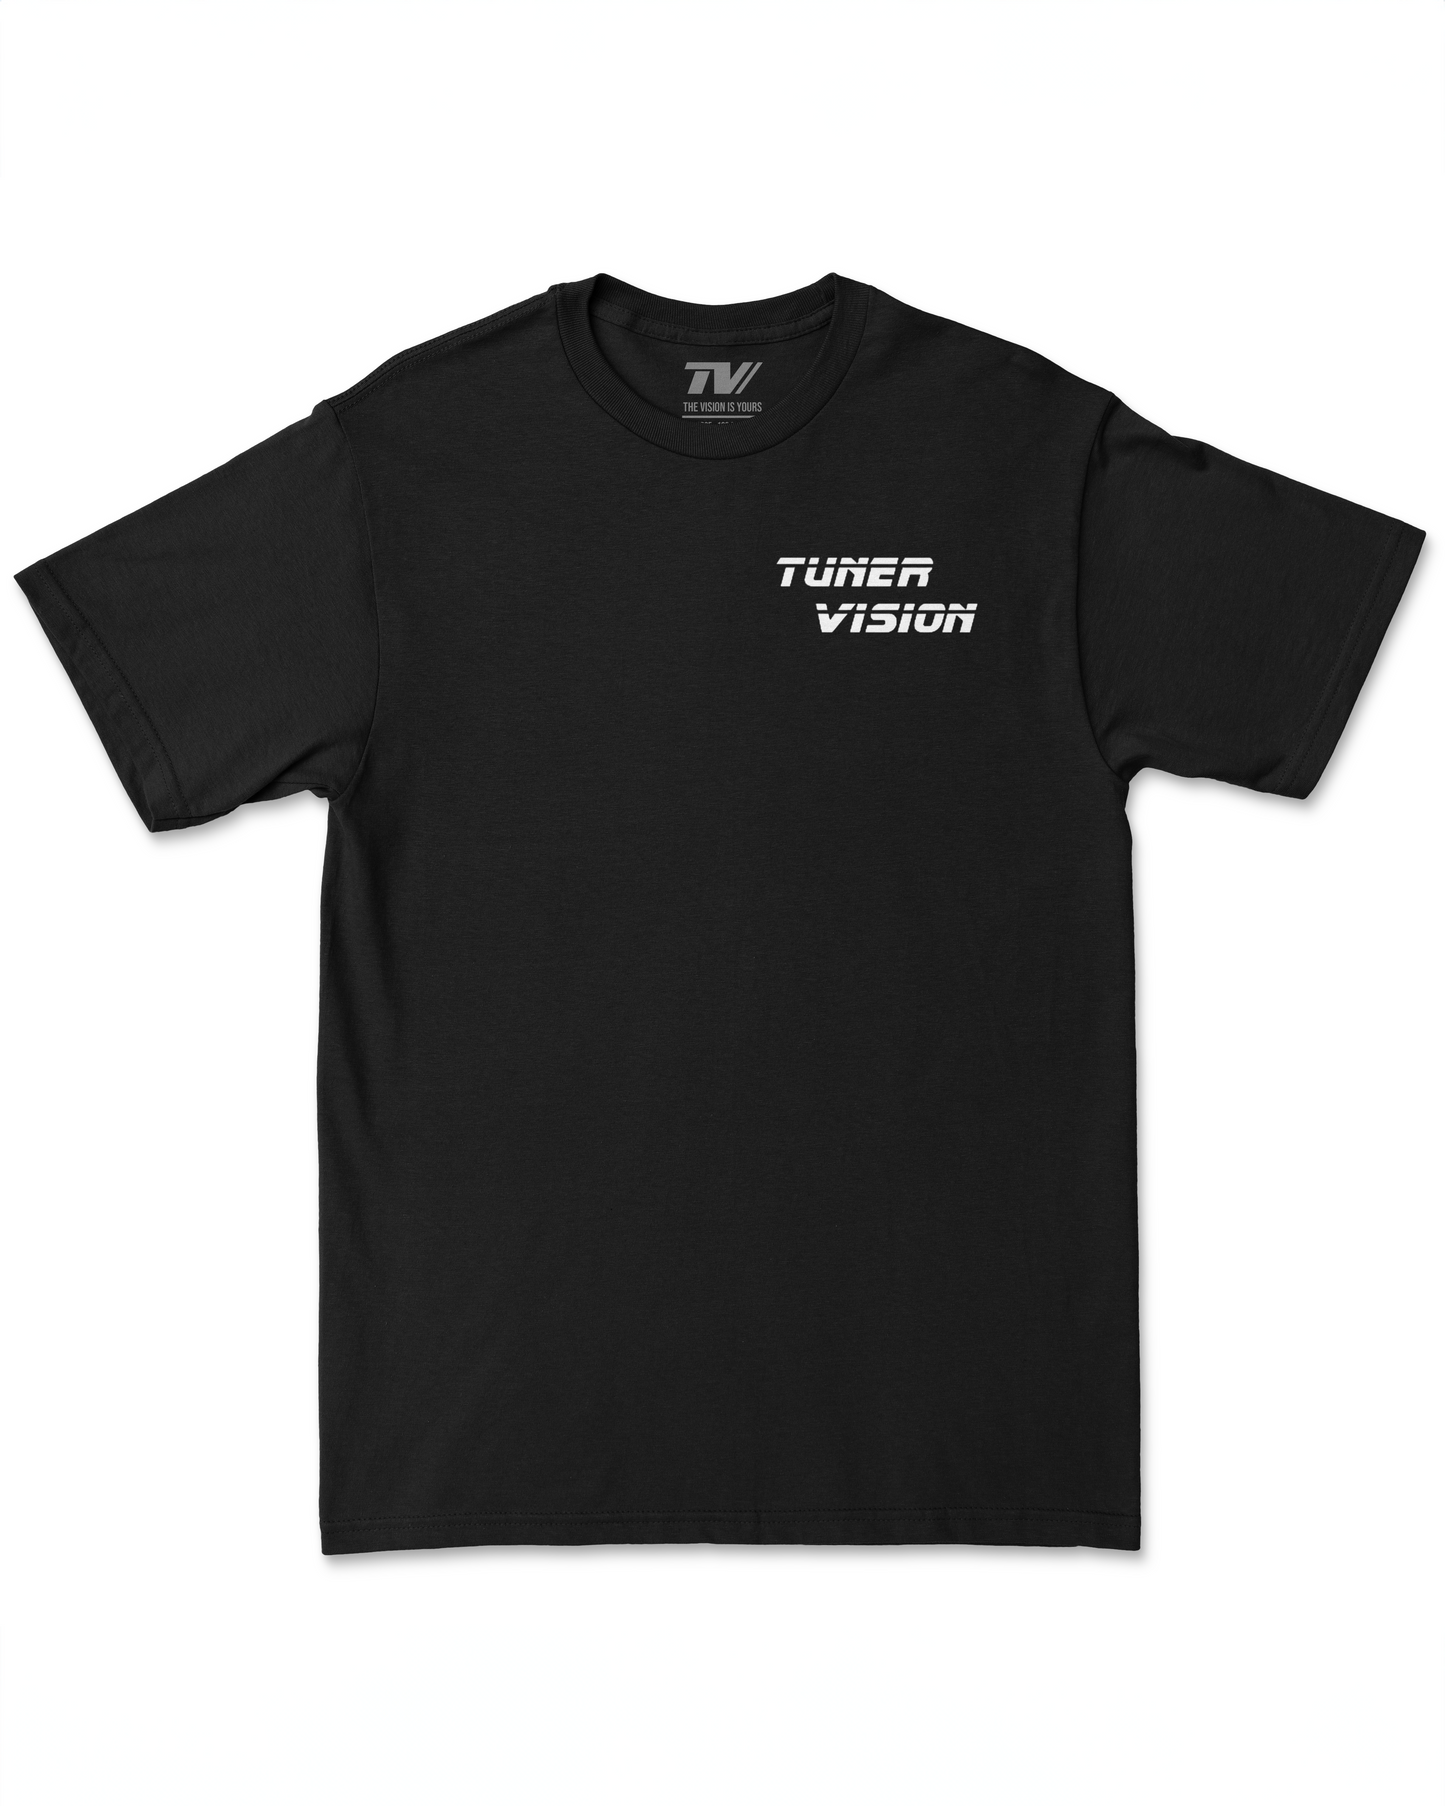 Tuner Vision Shirt